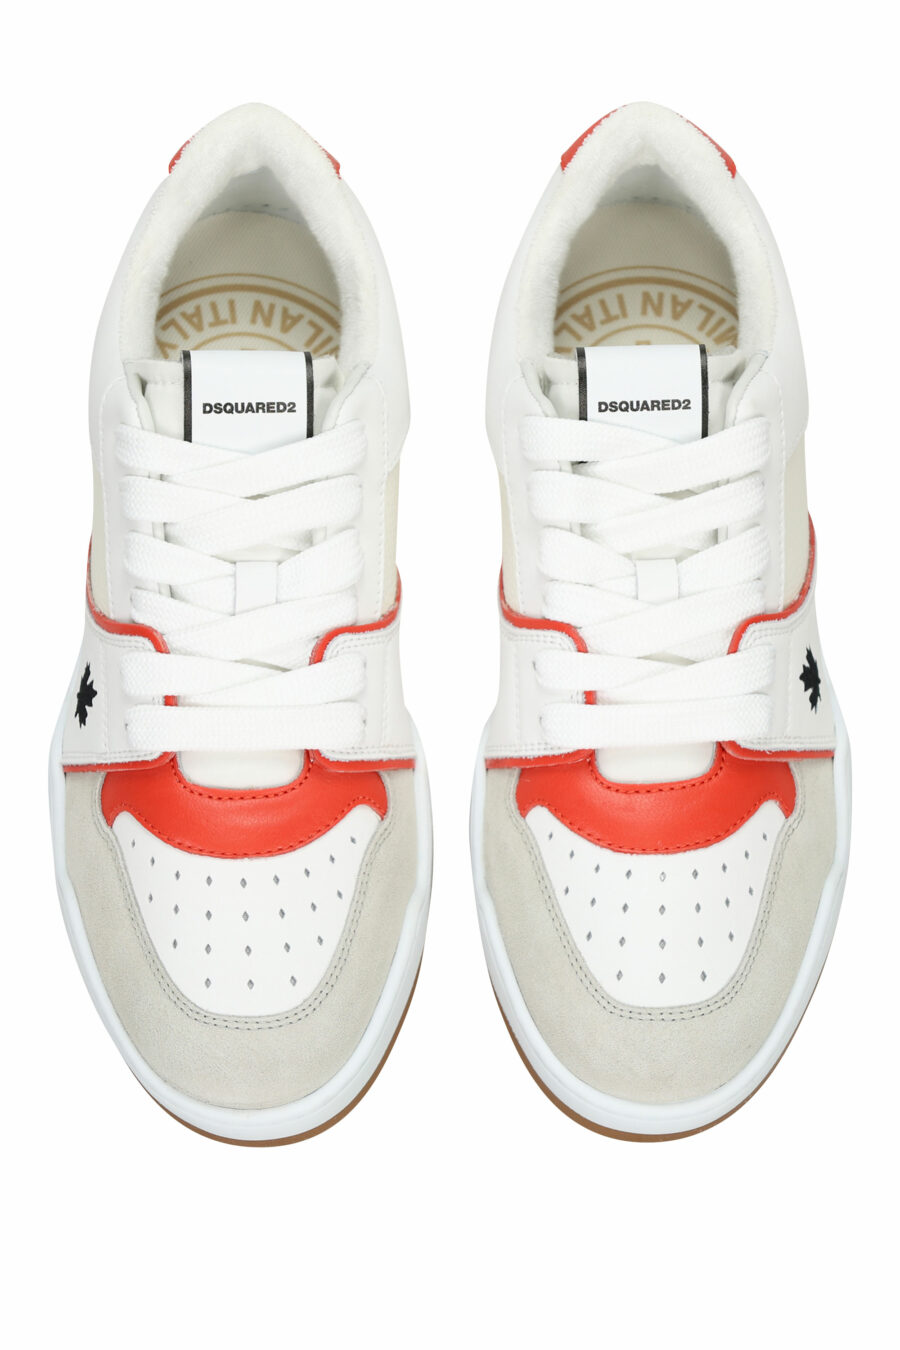 Zapatillas blancas "spyker" con rojo y gris - 8055777301814 4